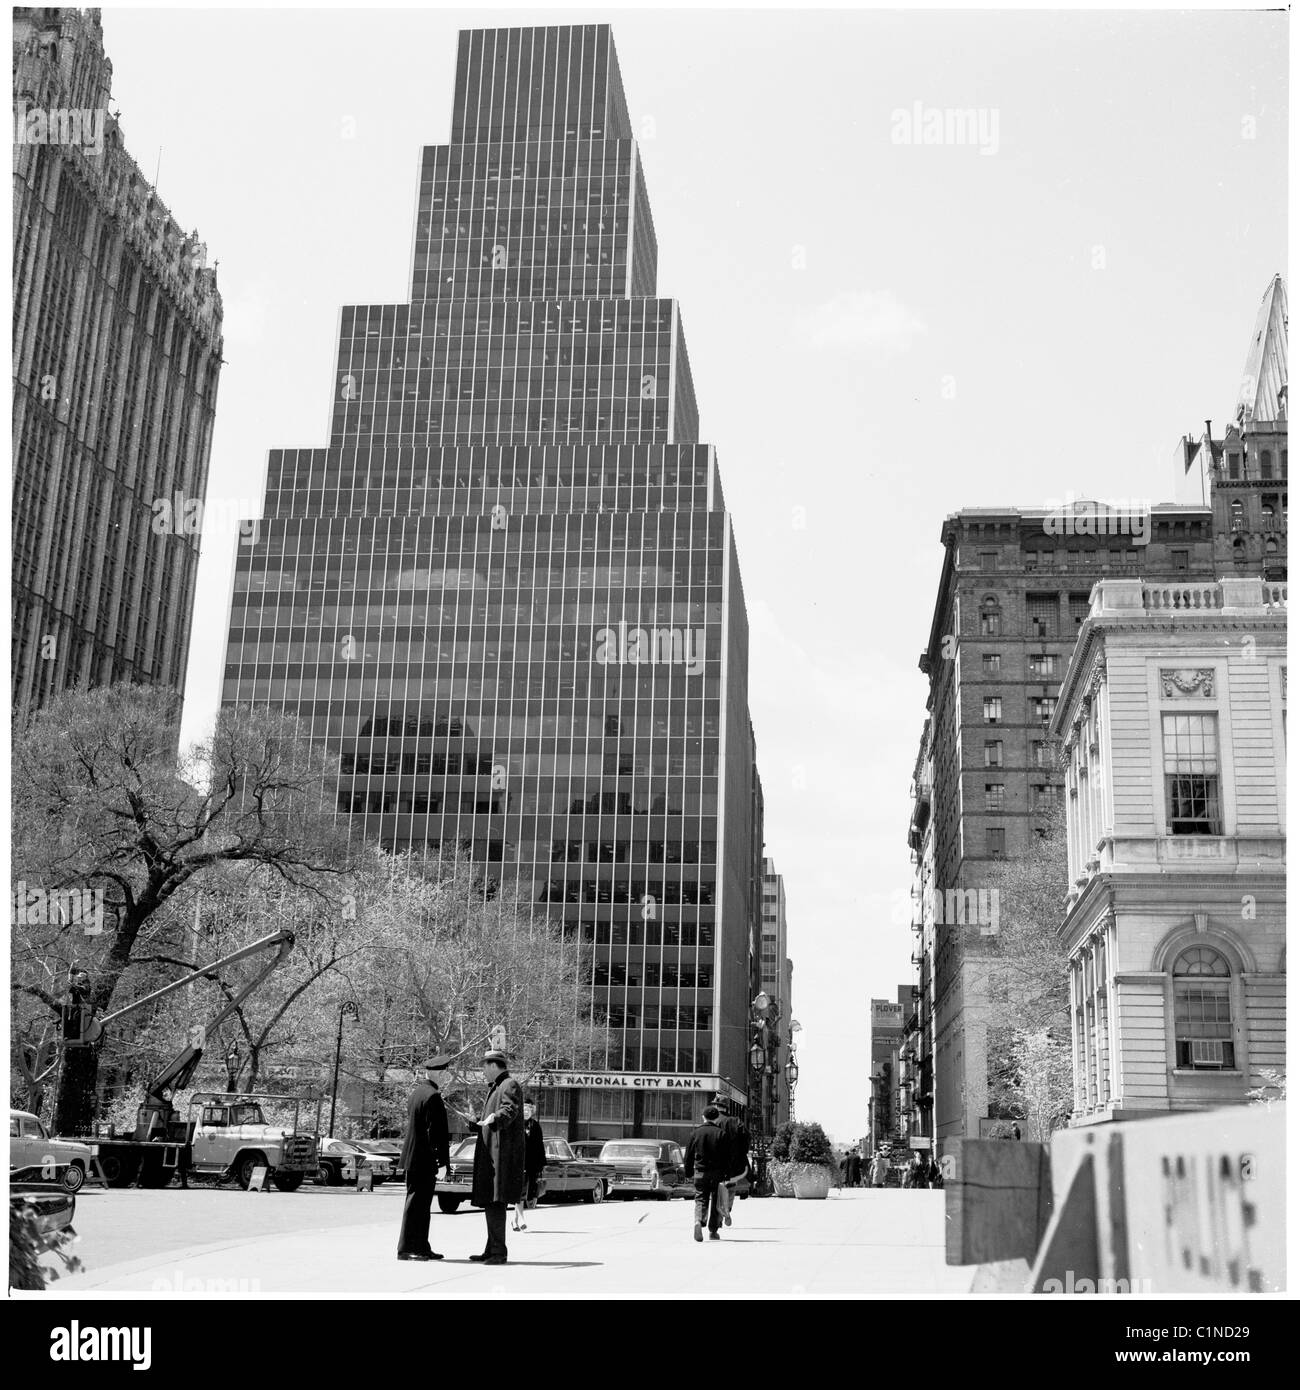 1950er Jahren New York. Skyrise Gebäude in New York City wie in den 1950er Jahren, in diesem historischen Bild von J Allan Cash zu sehen. Stockfoto